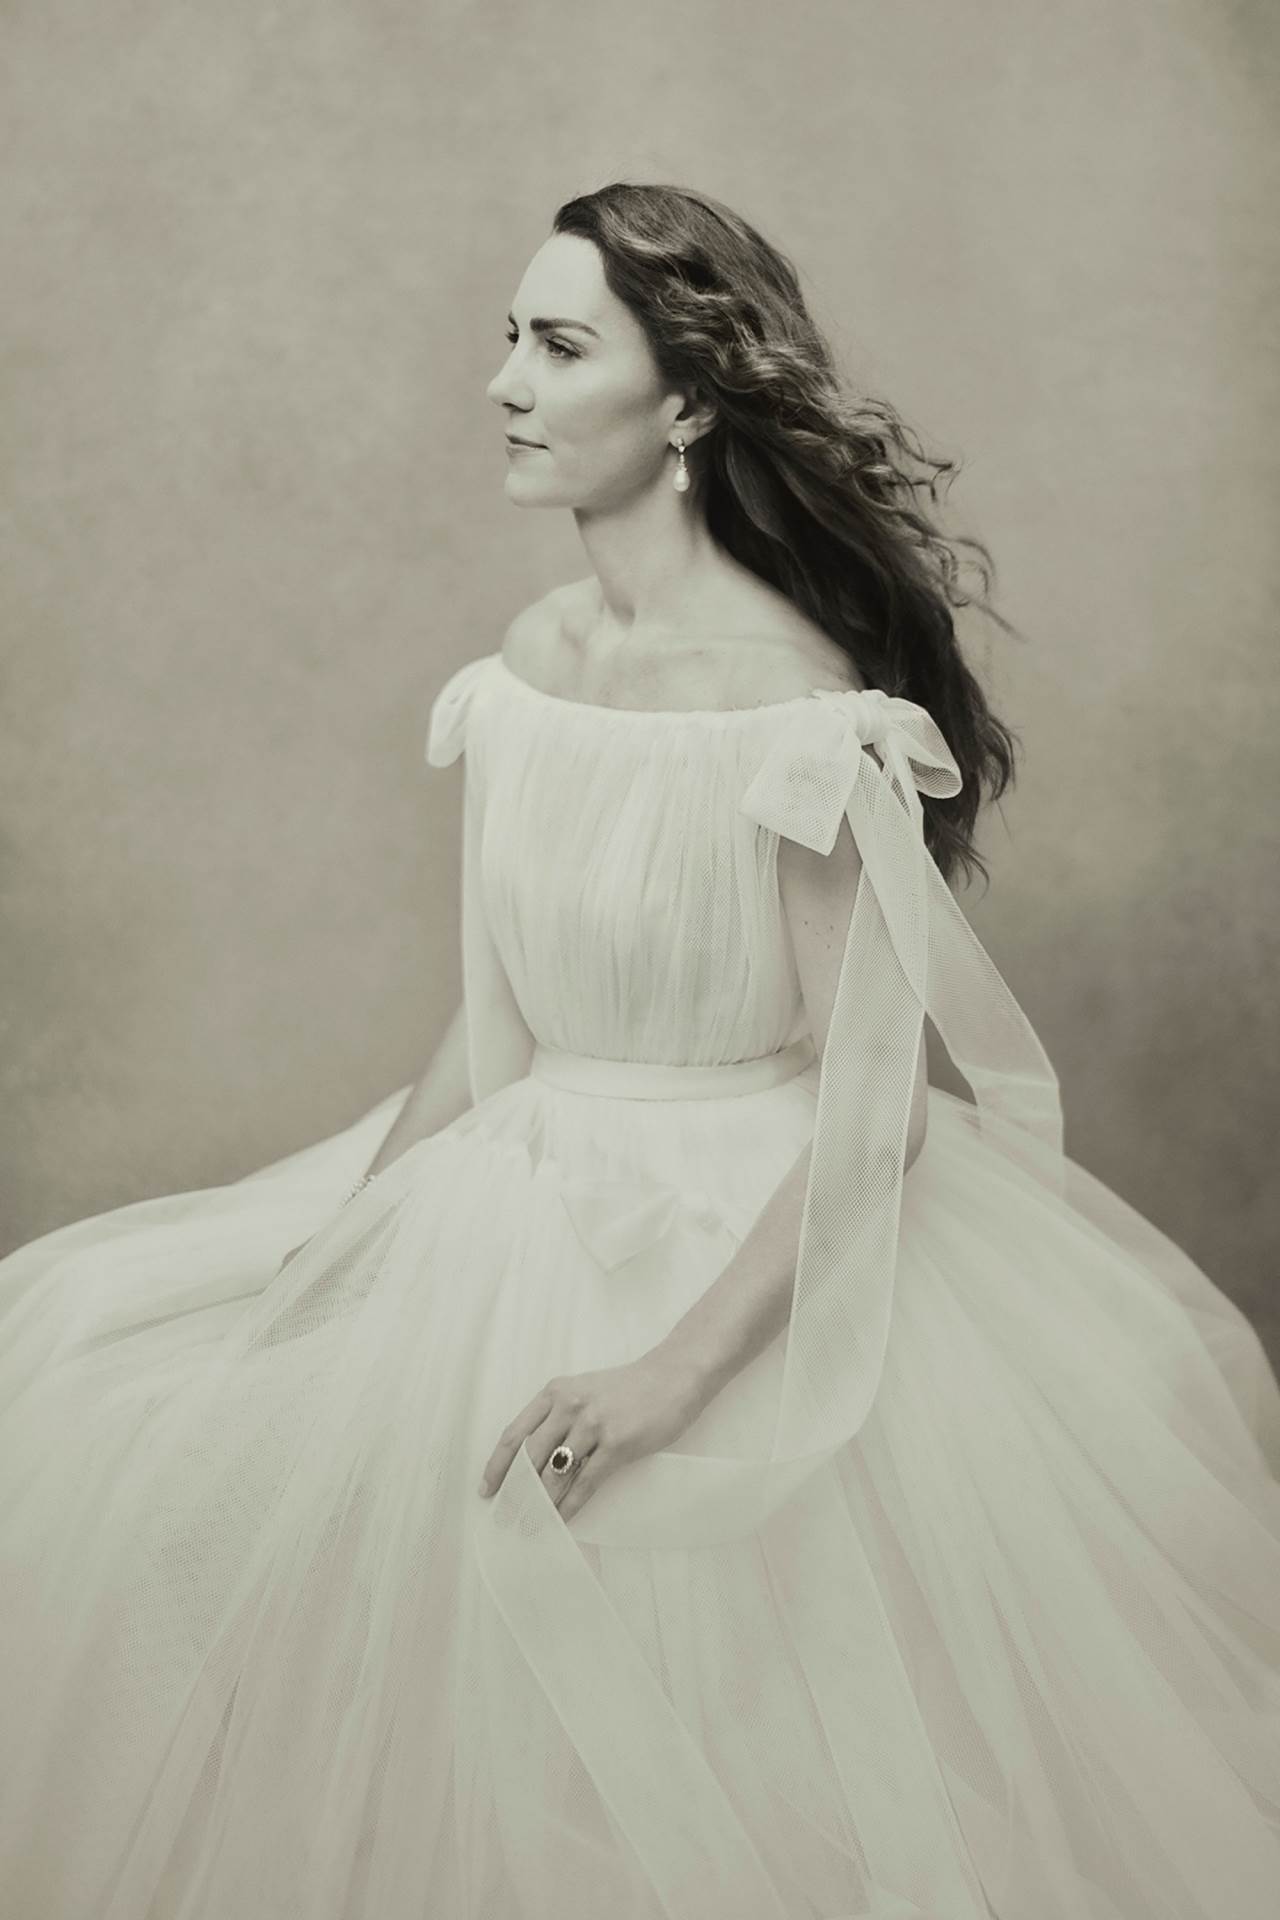 Kate Middleton često podržava umjetnike putem svojih pokroviteljstava